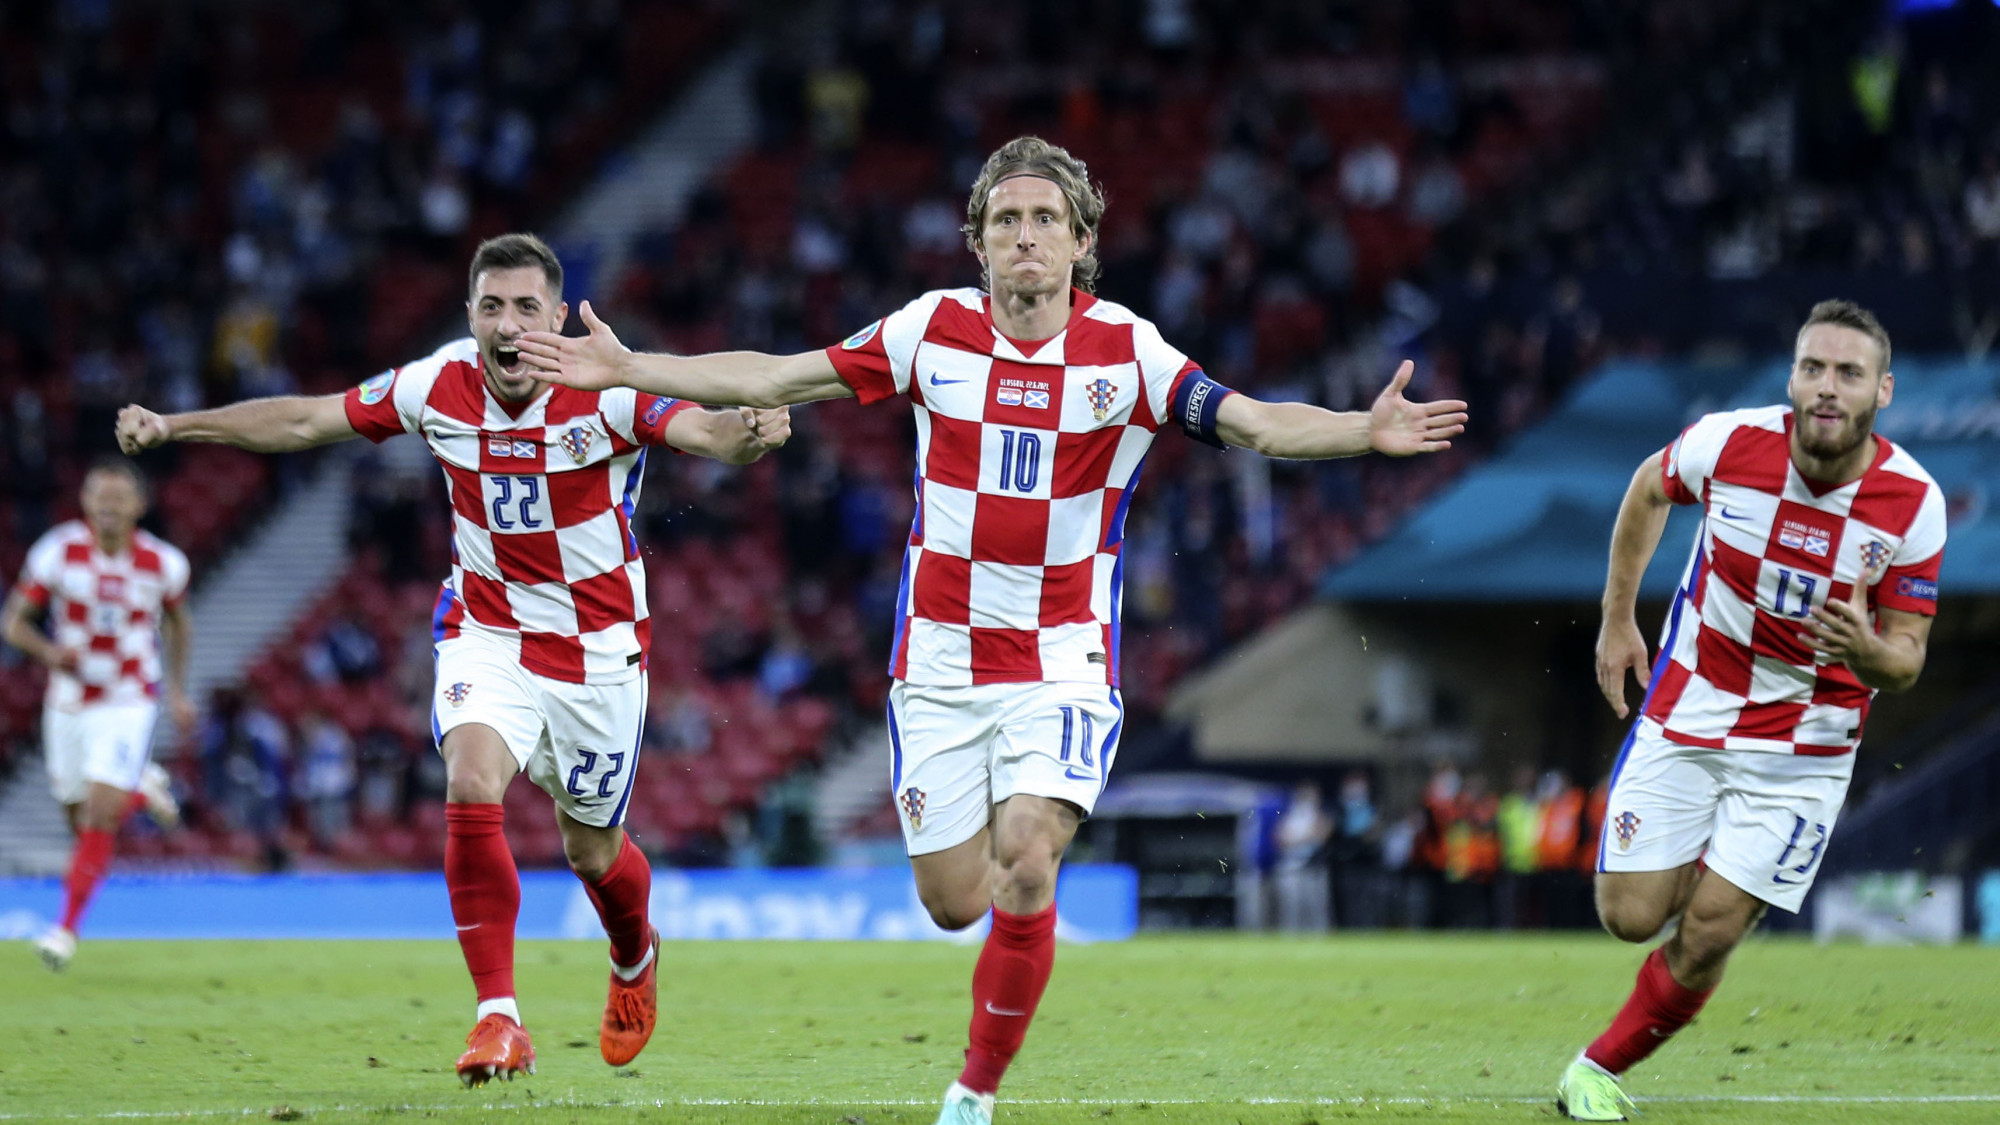 Modric et Brozovic d’entrée, les titulaires du choc Croatie-Canada